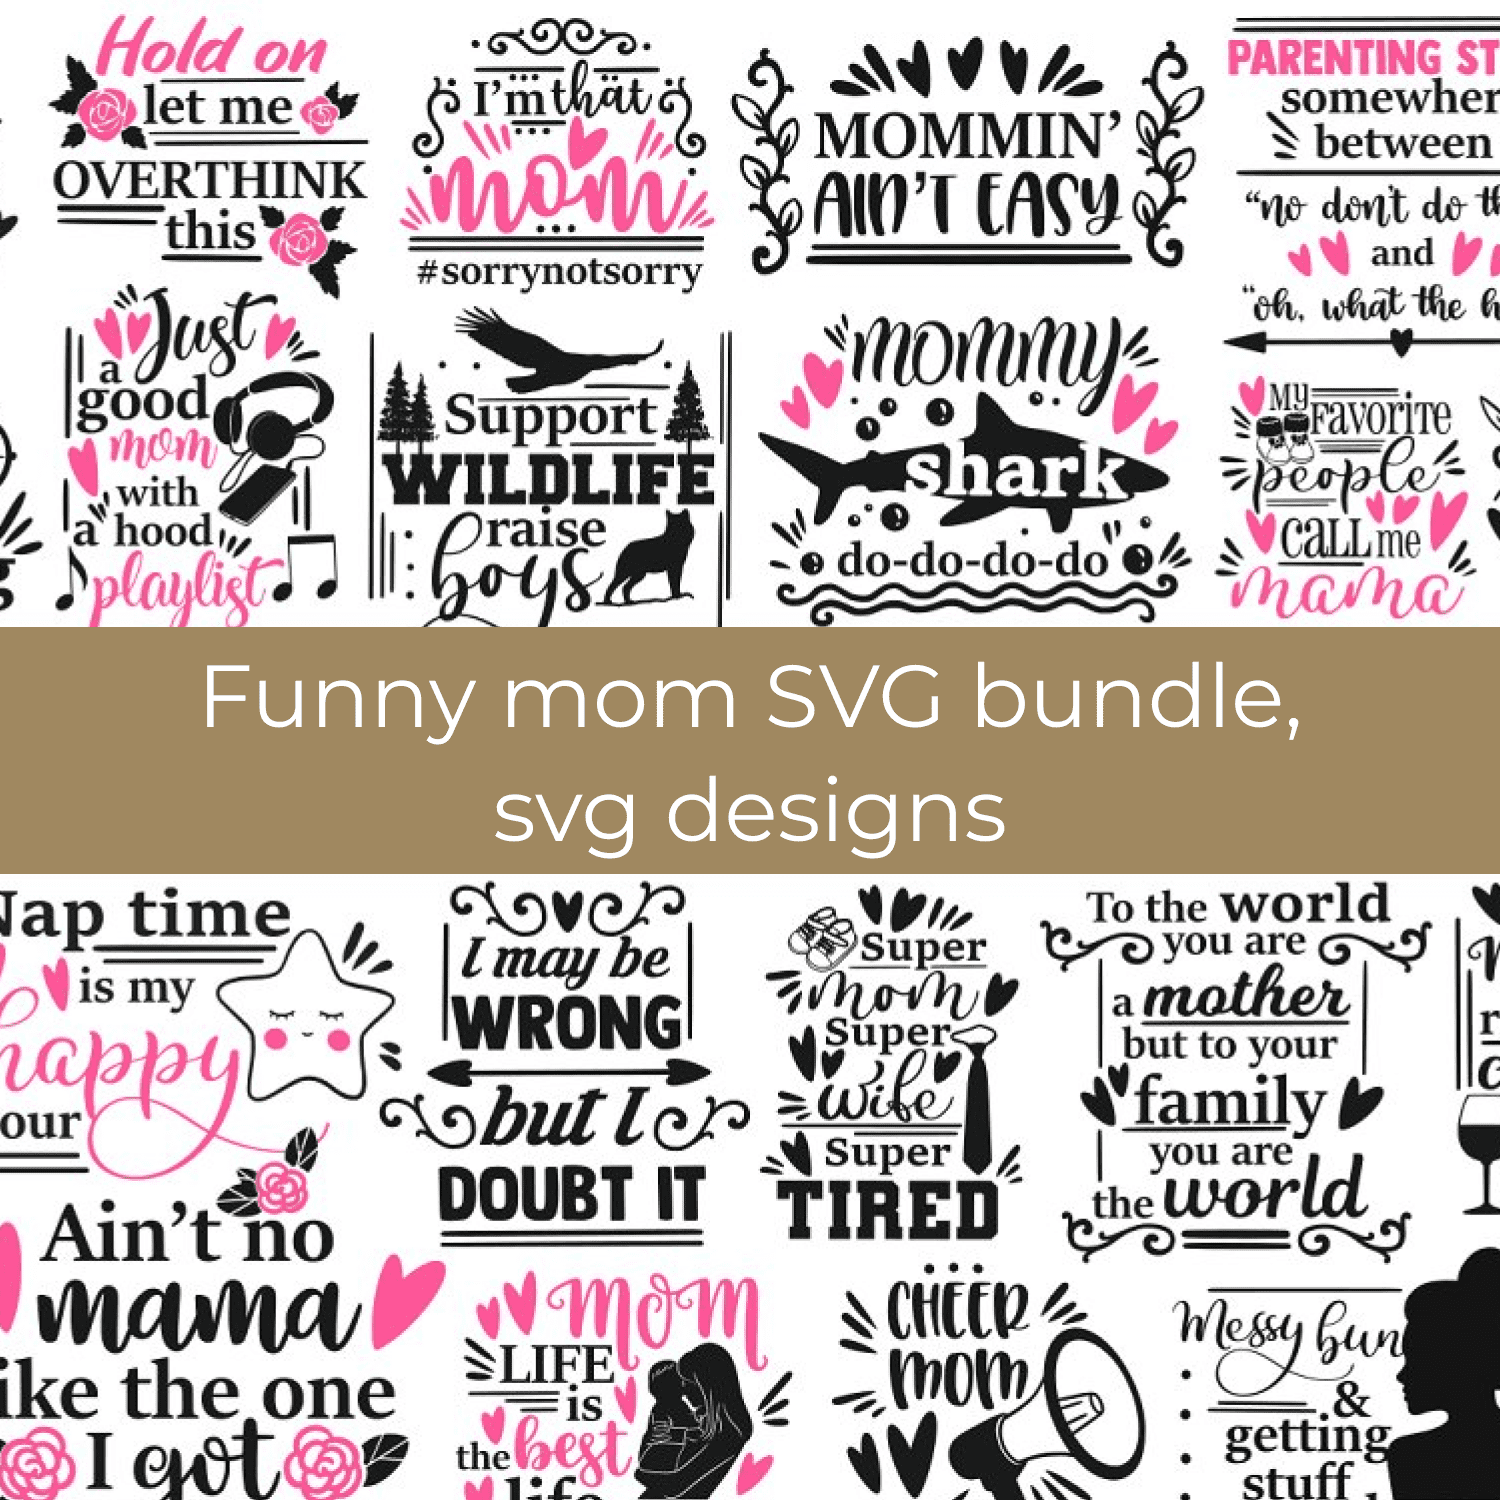 Funny mom SVG bundle, svg designs cover.